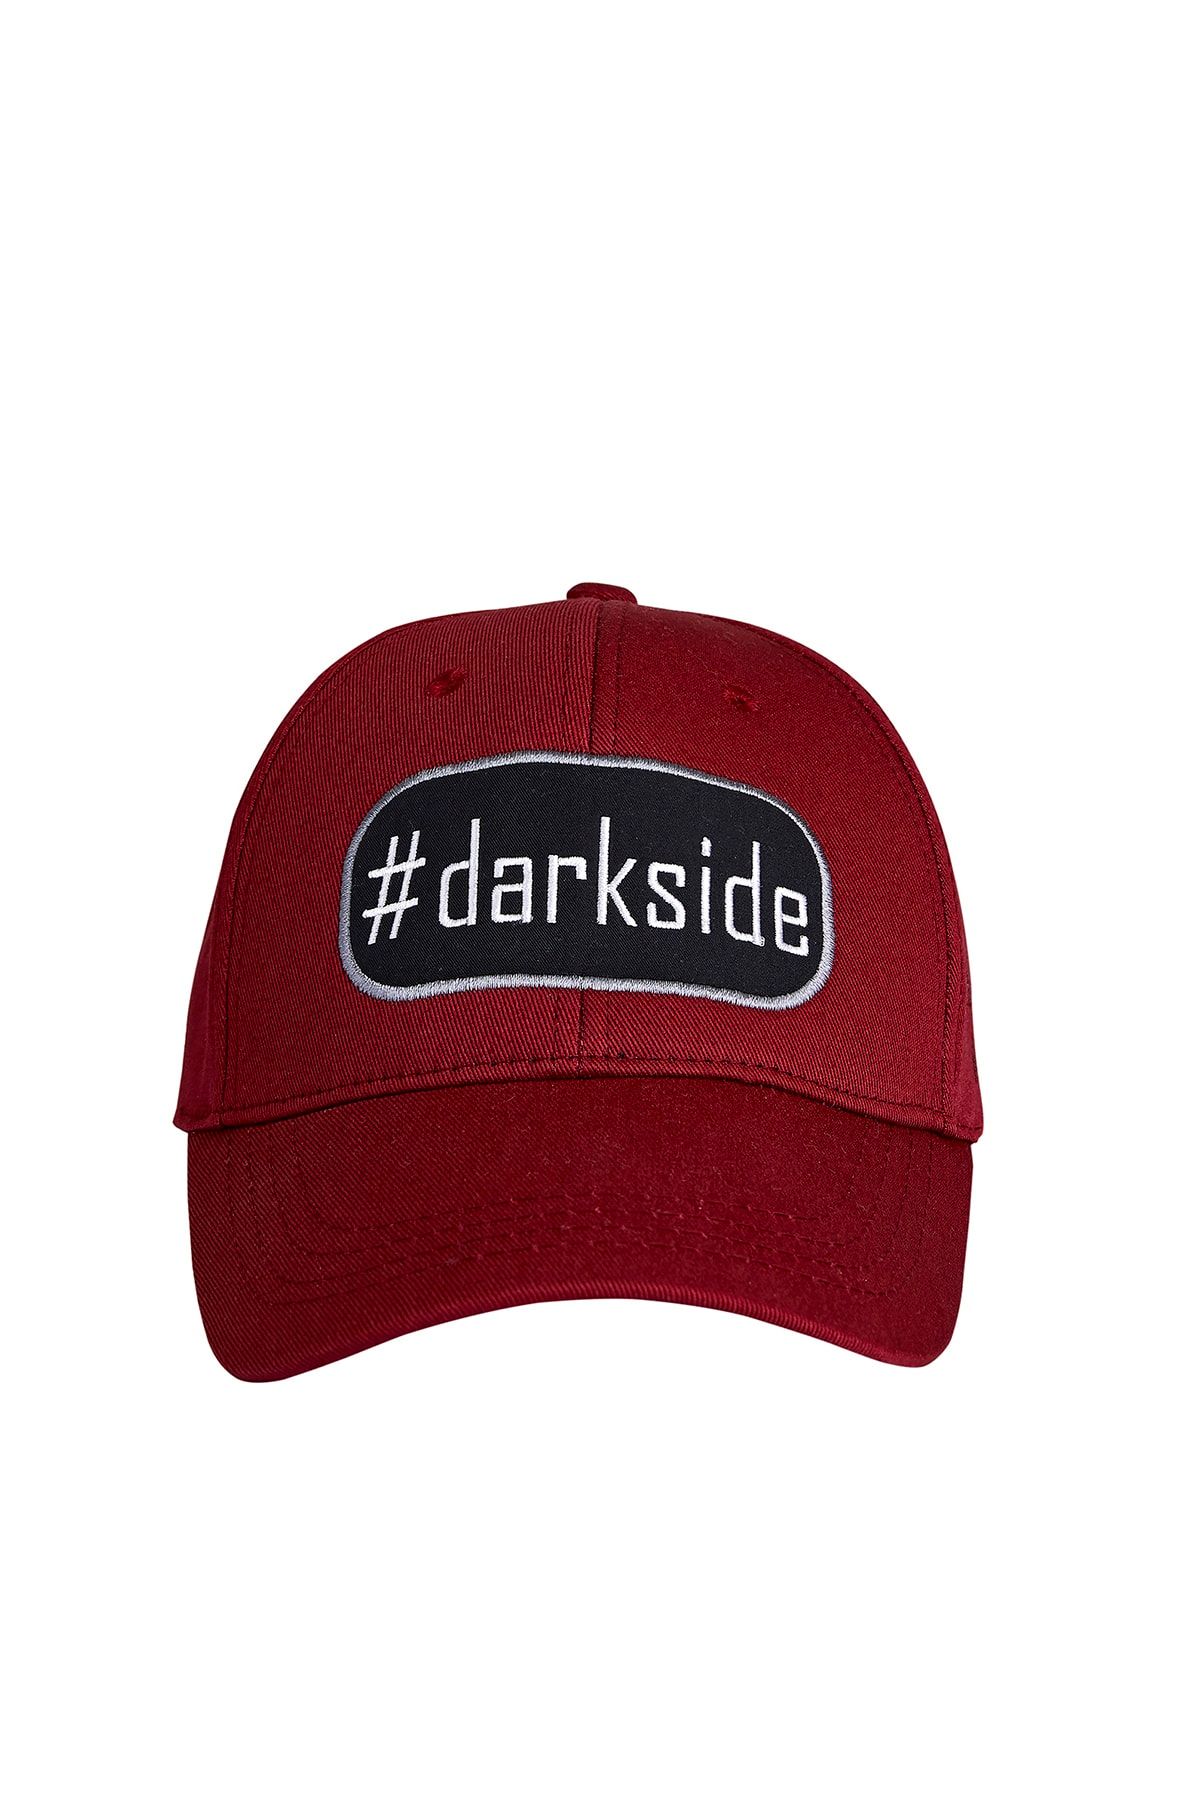 Bad Bear Darkside Cap Erkek Şapka - 20.02.01.009